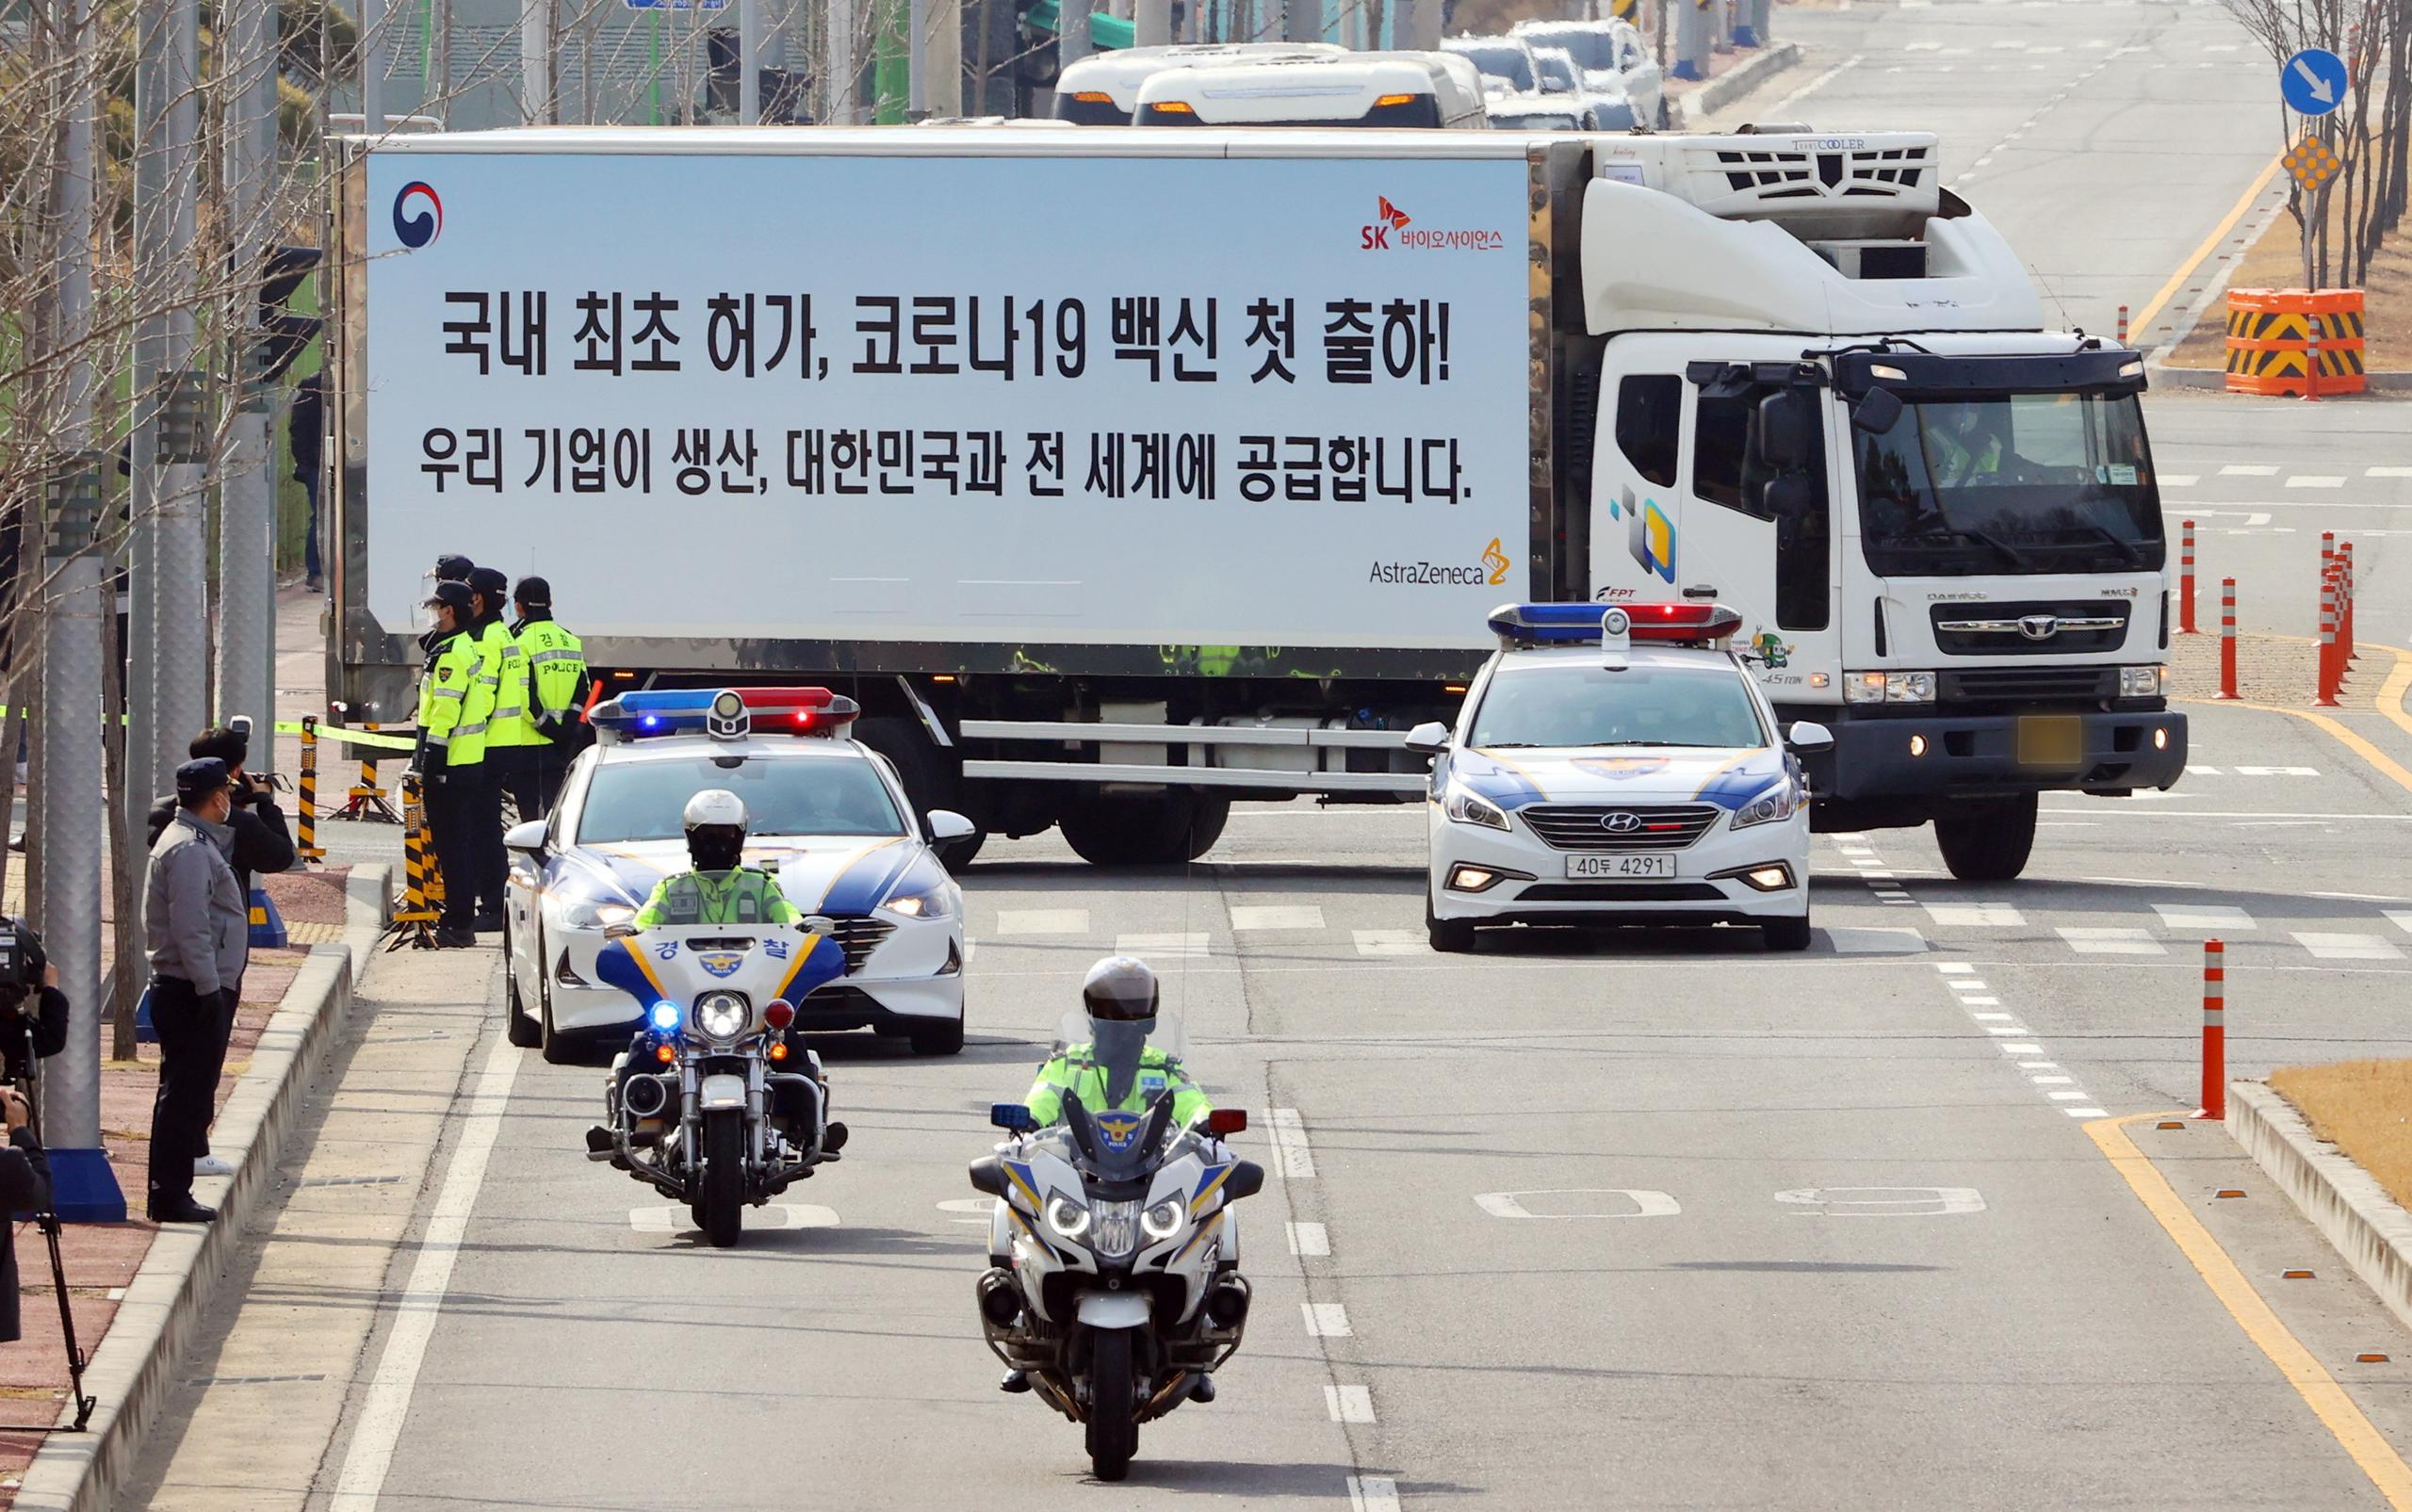 Corea del Sur, que en ningún momento ha adoptado confinamientos ni cerrado fronteras, es uno de los países que mejor ha gestionado la pandemia.